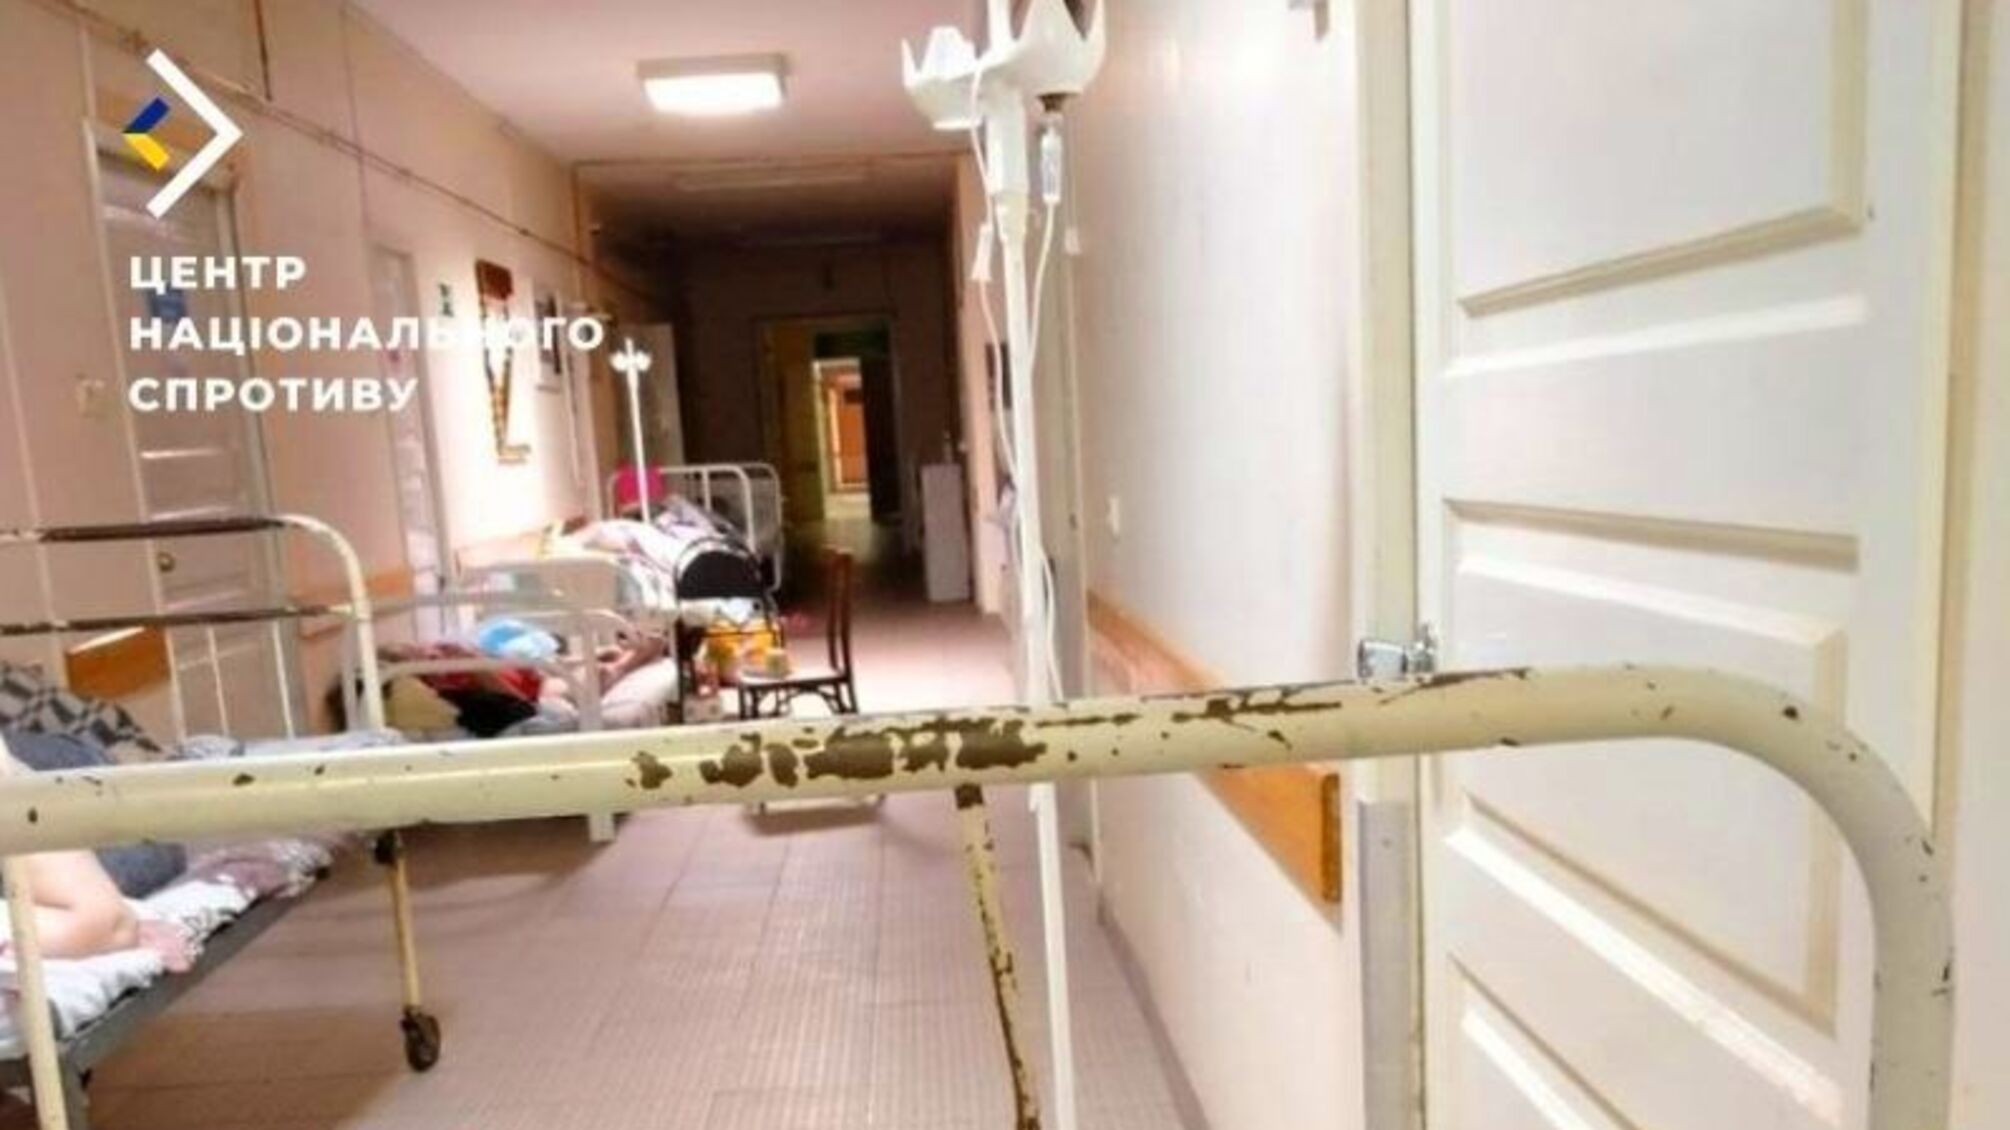 Російські військові знаходяться в Кримських лікарнях 